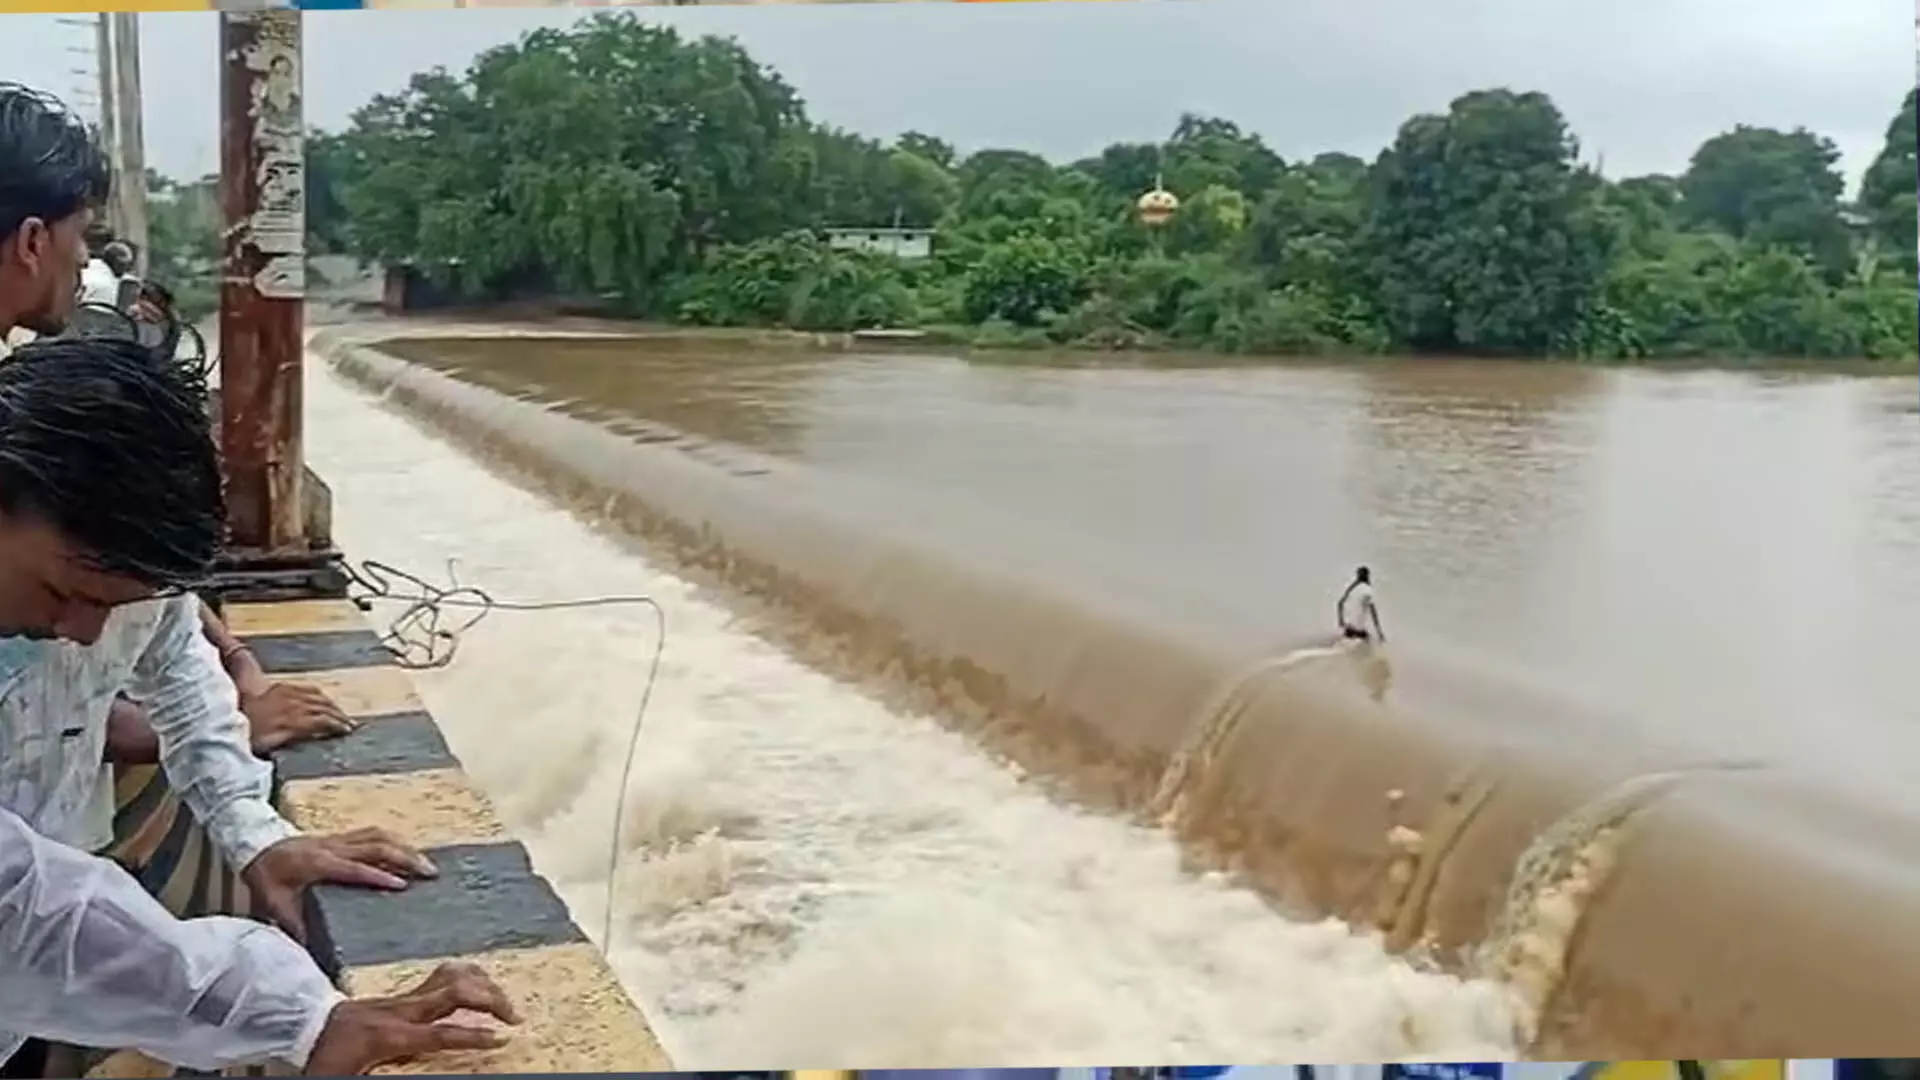 Live वीडियो बनाते हुए नदी में फिसला शख्स, मौत